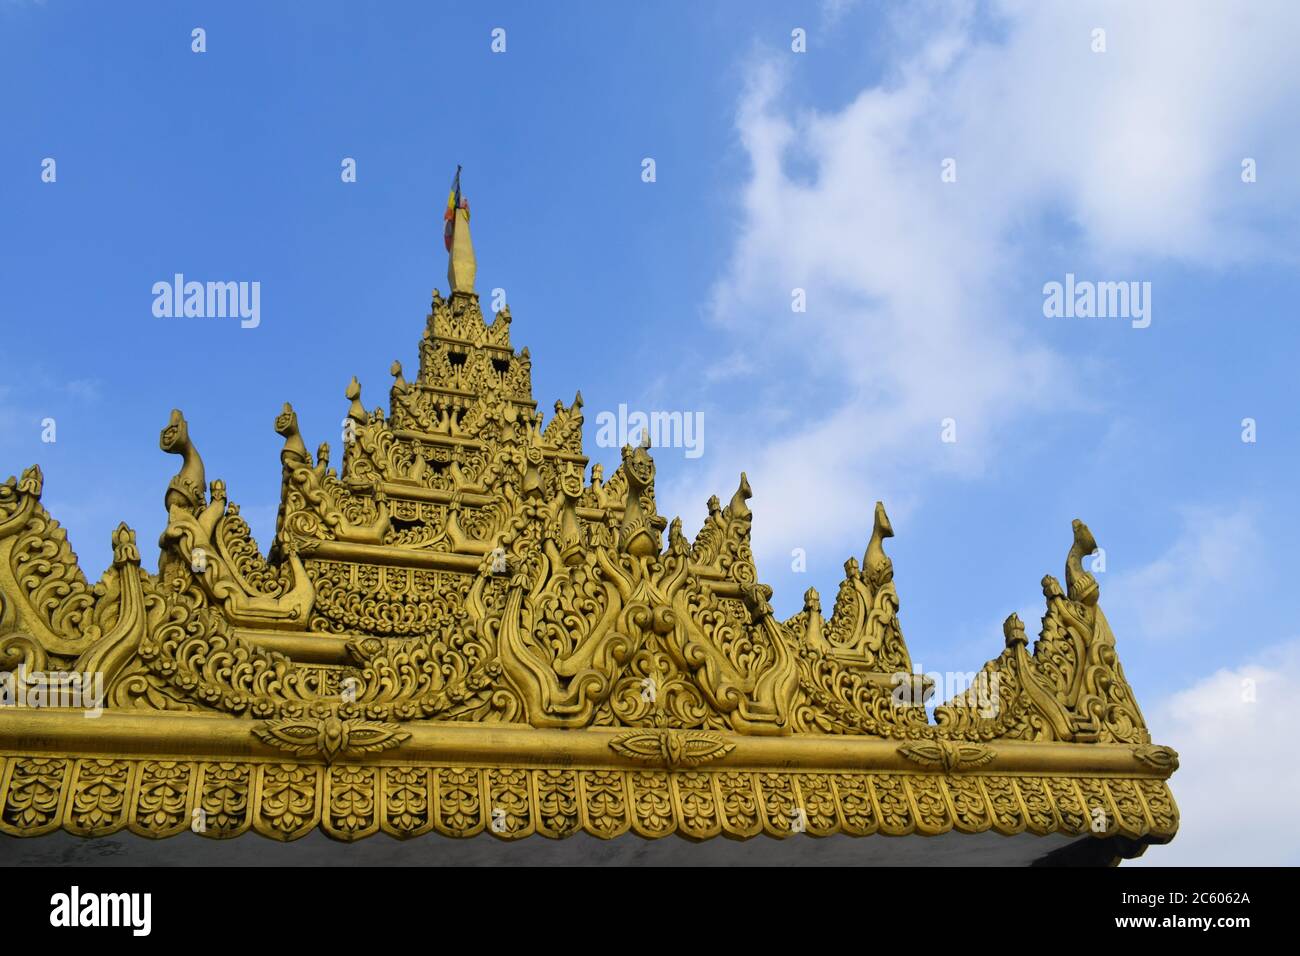 Spitze des buddhistischen Tempels ehrfürchtige Architektur goldene Pagode.Blauer Himmel und buddhistisches Kloster Stockfoto